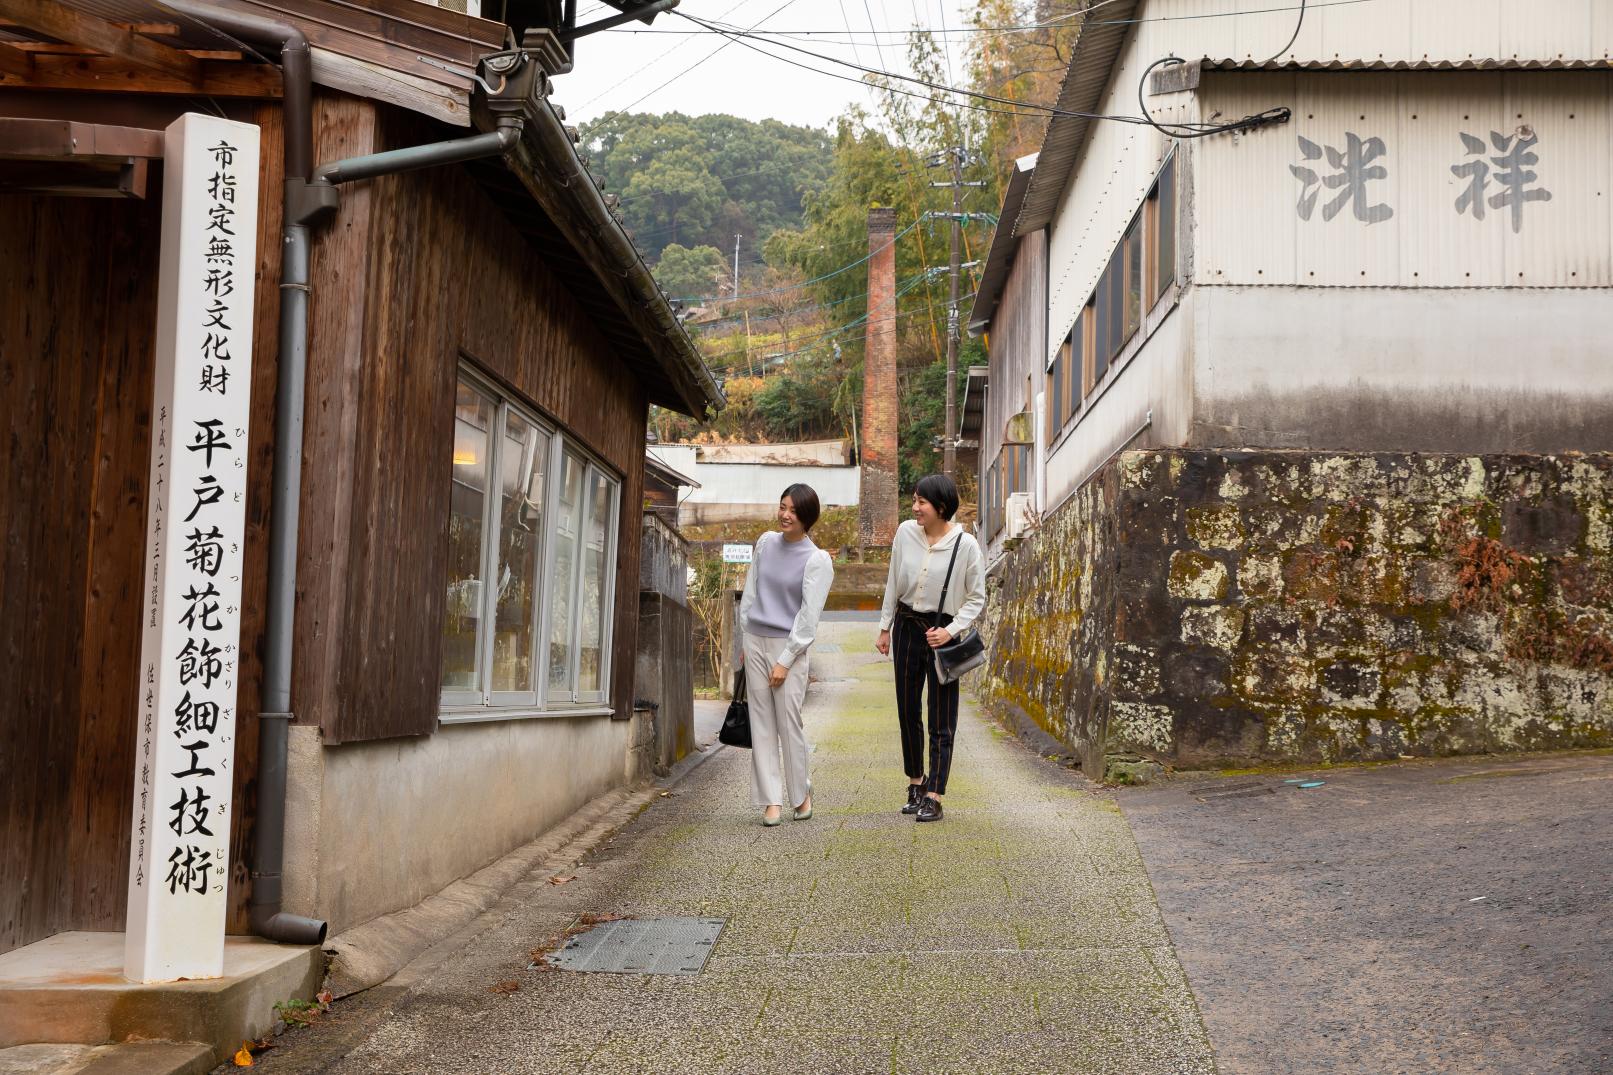 【택시 플랜】400년 역사를 자랑하는 사세보의 도자기 마을 '미카와치'를 둘러보는 코스-0